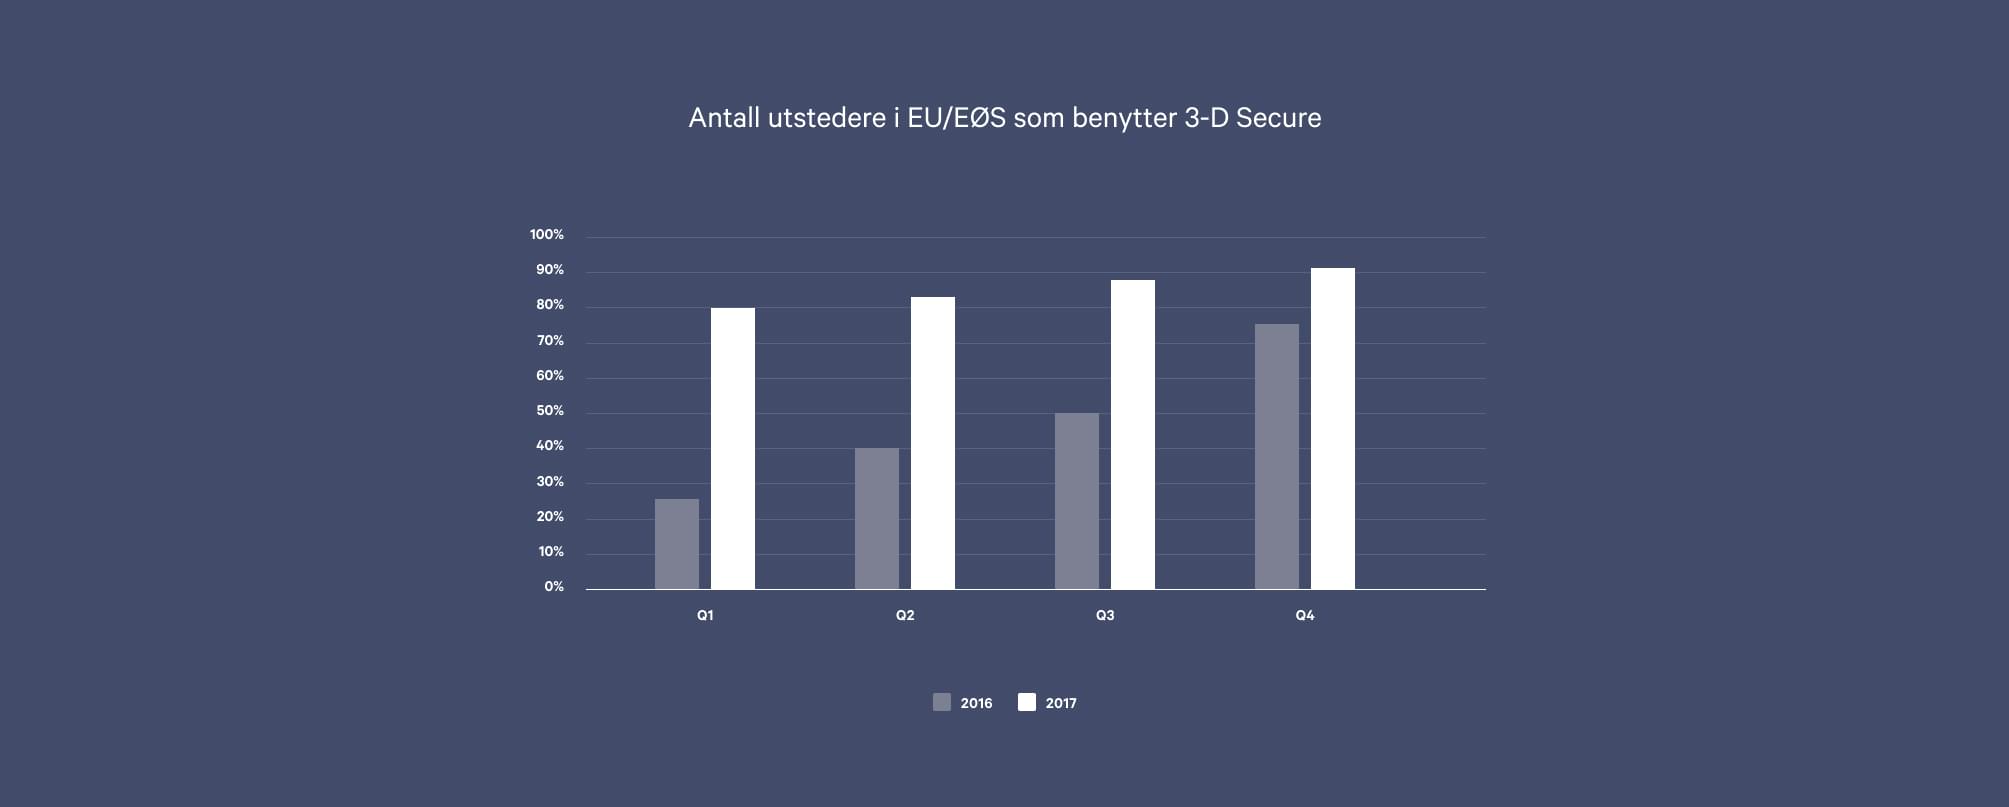 Statistikk over hvor mange kortutstedere innenfor EU/EØS som benytter 3-D Secure